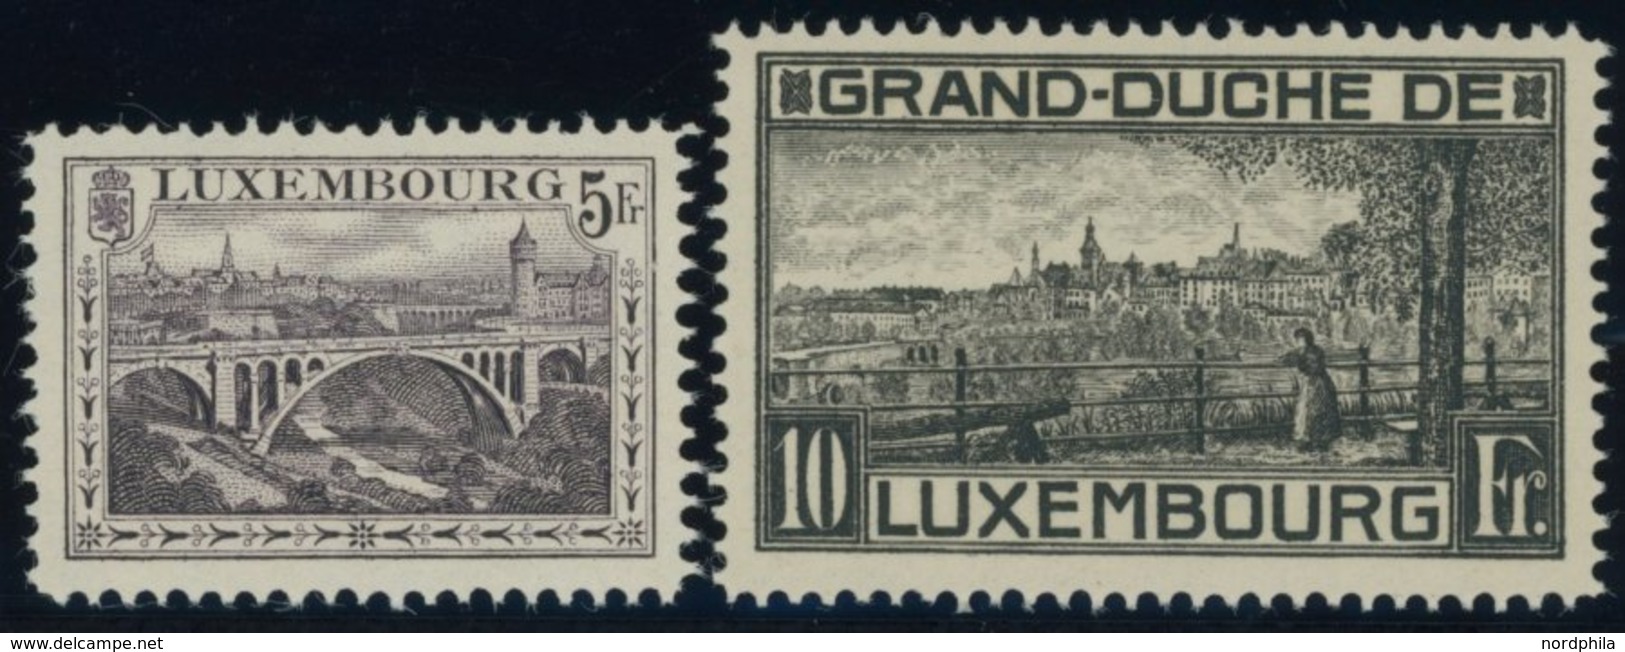 LUXEMBURG 136B,143B **, 1934, 5 Und 10 Fr. Landschaften, Gezähnt B, Postfrisch, 2 Prachtwerte, Mi. 80.- - Officials